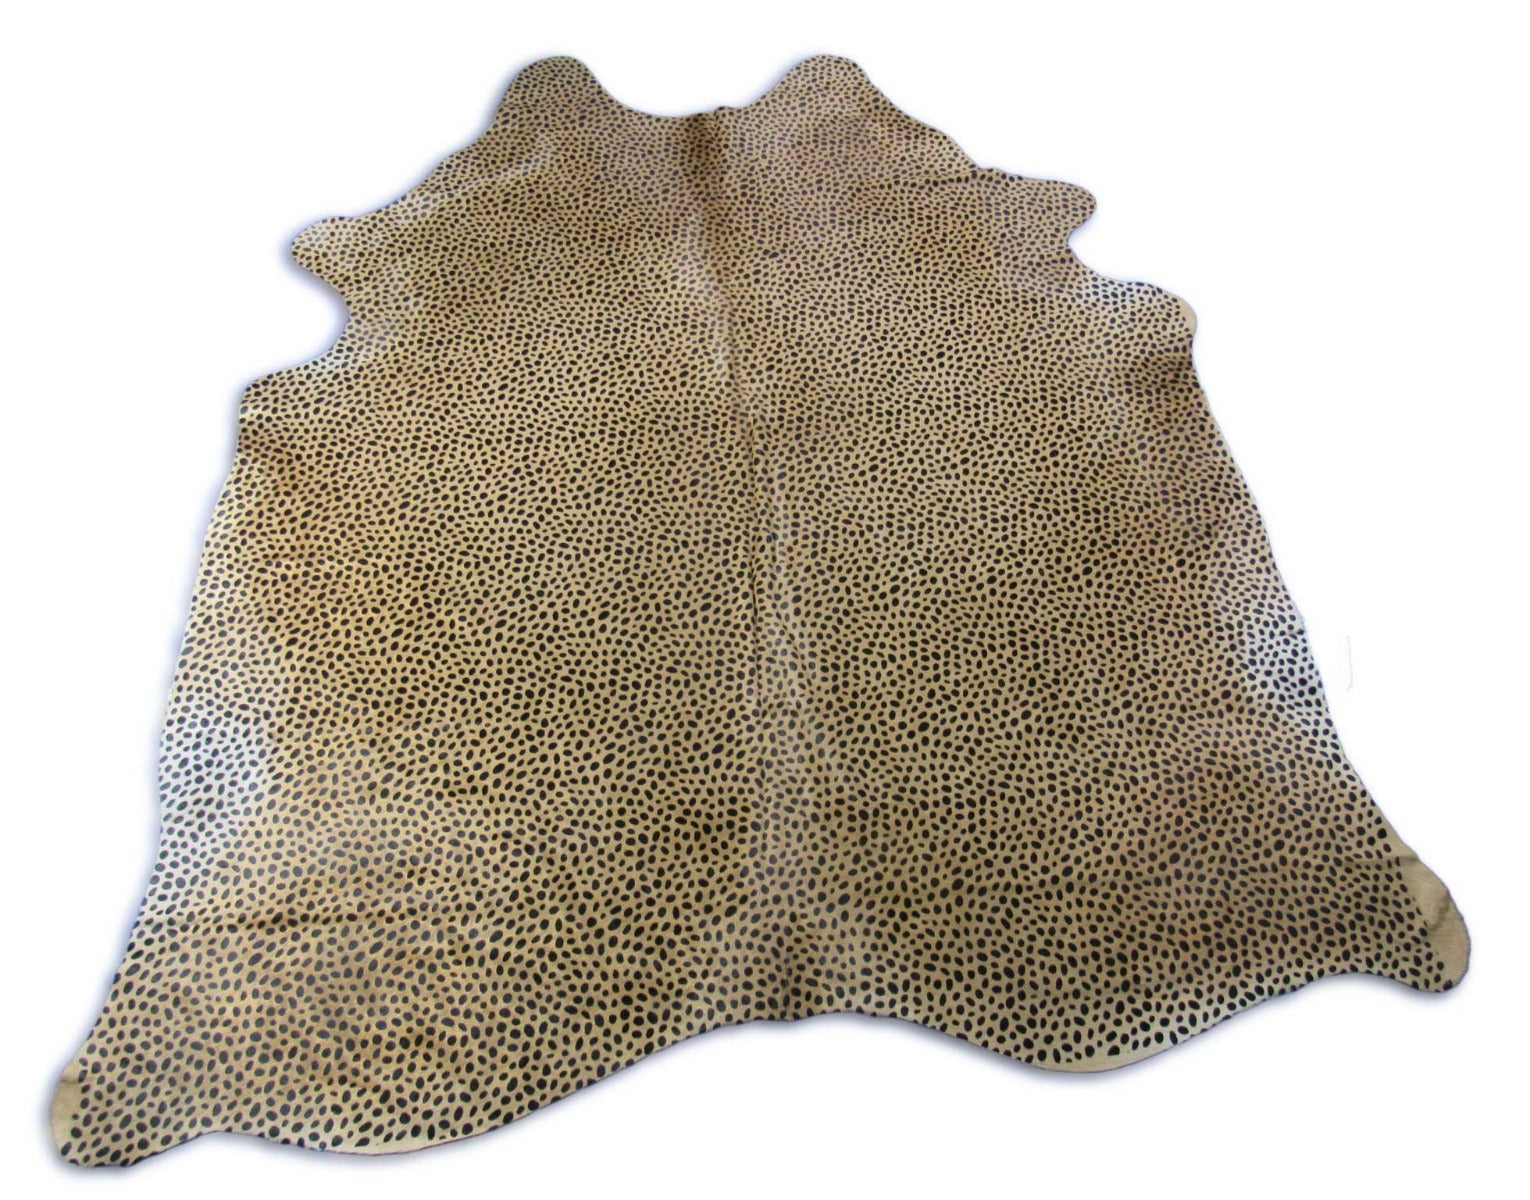 Cheetah Print Cowhide Rug - Size: 7.2x6.7 feet C-1725